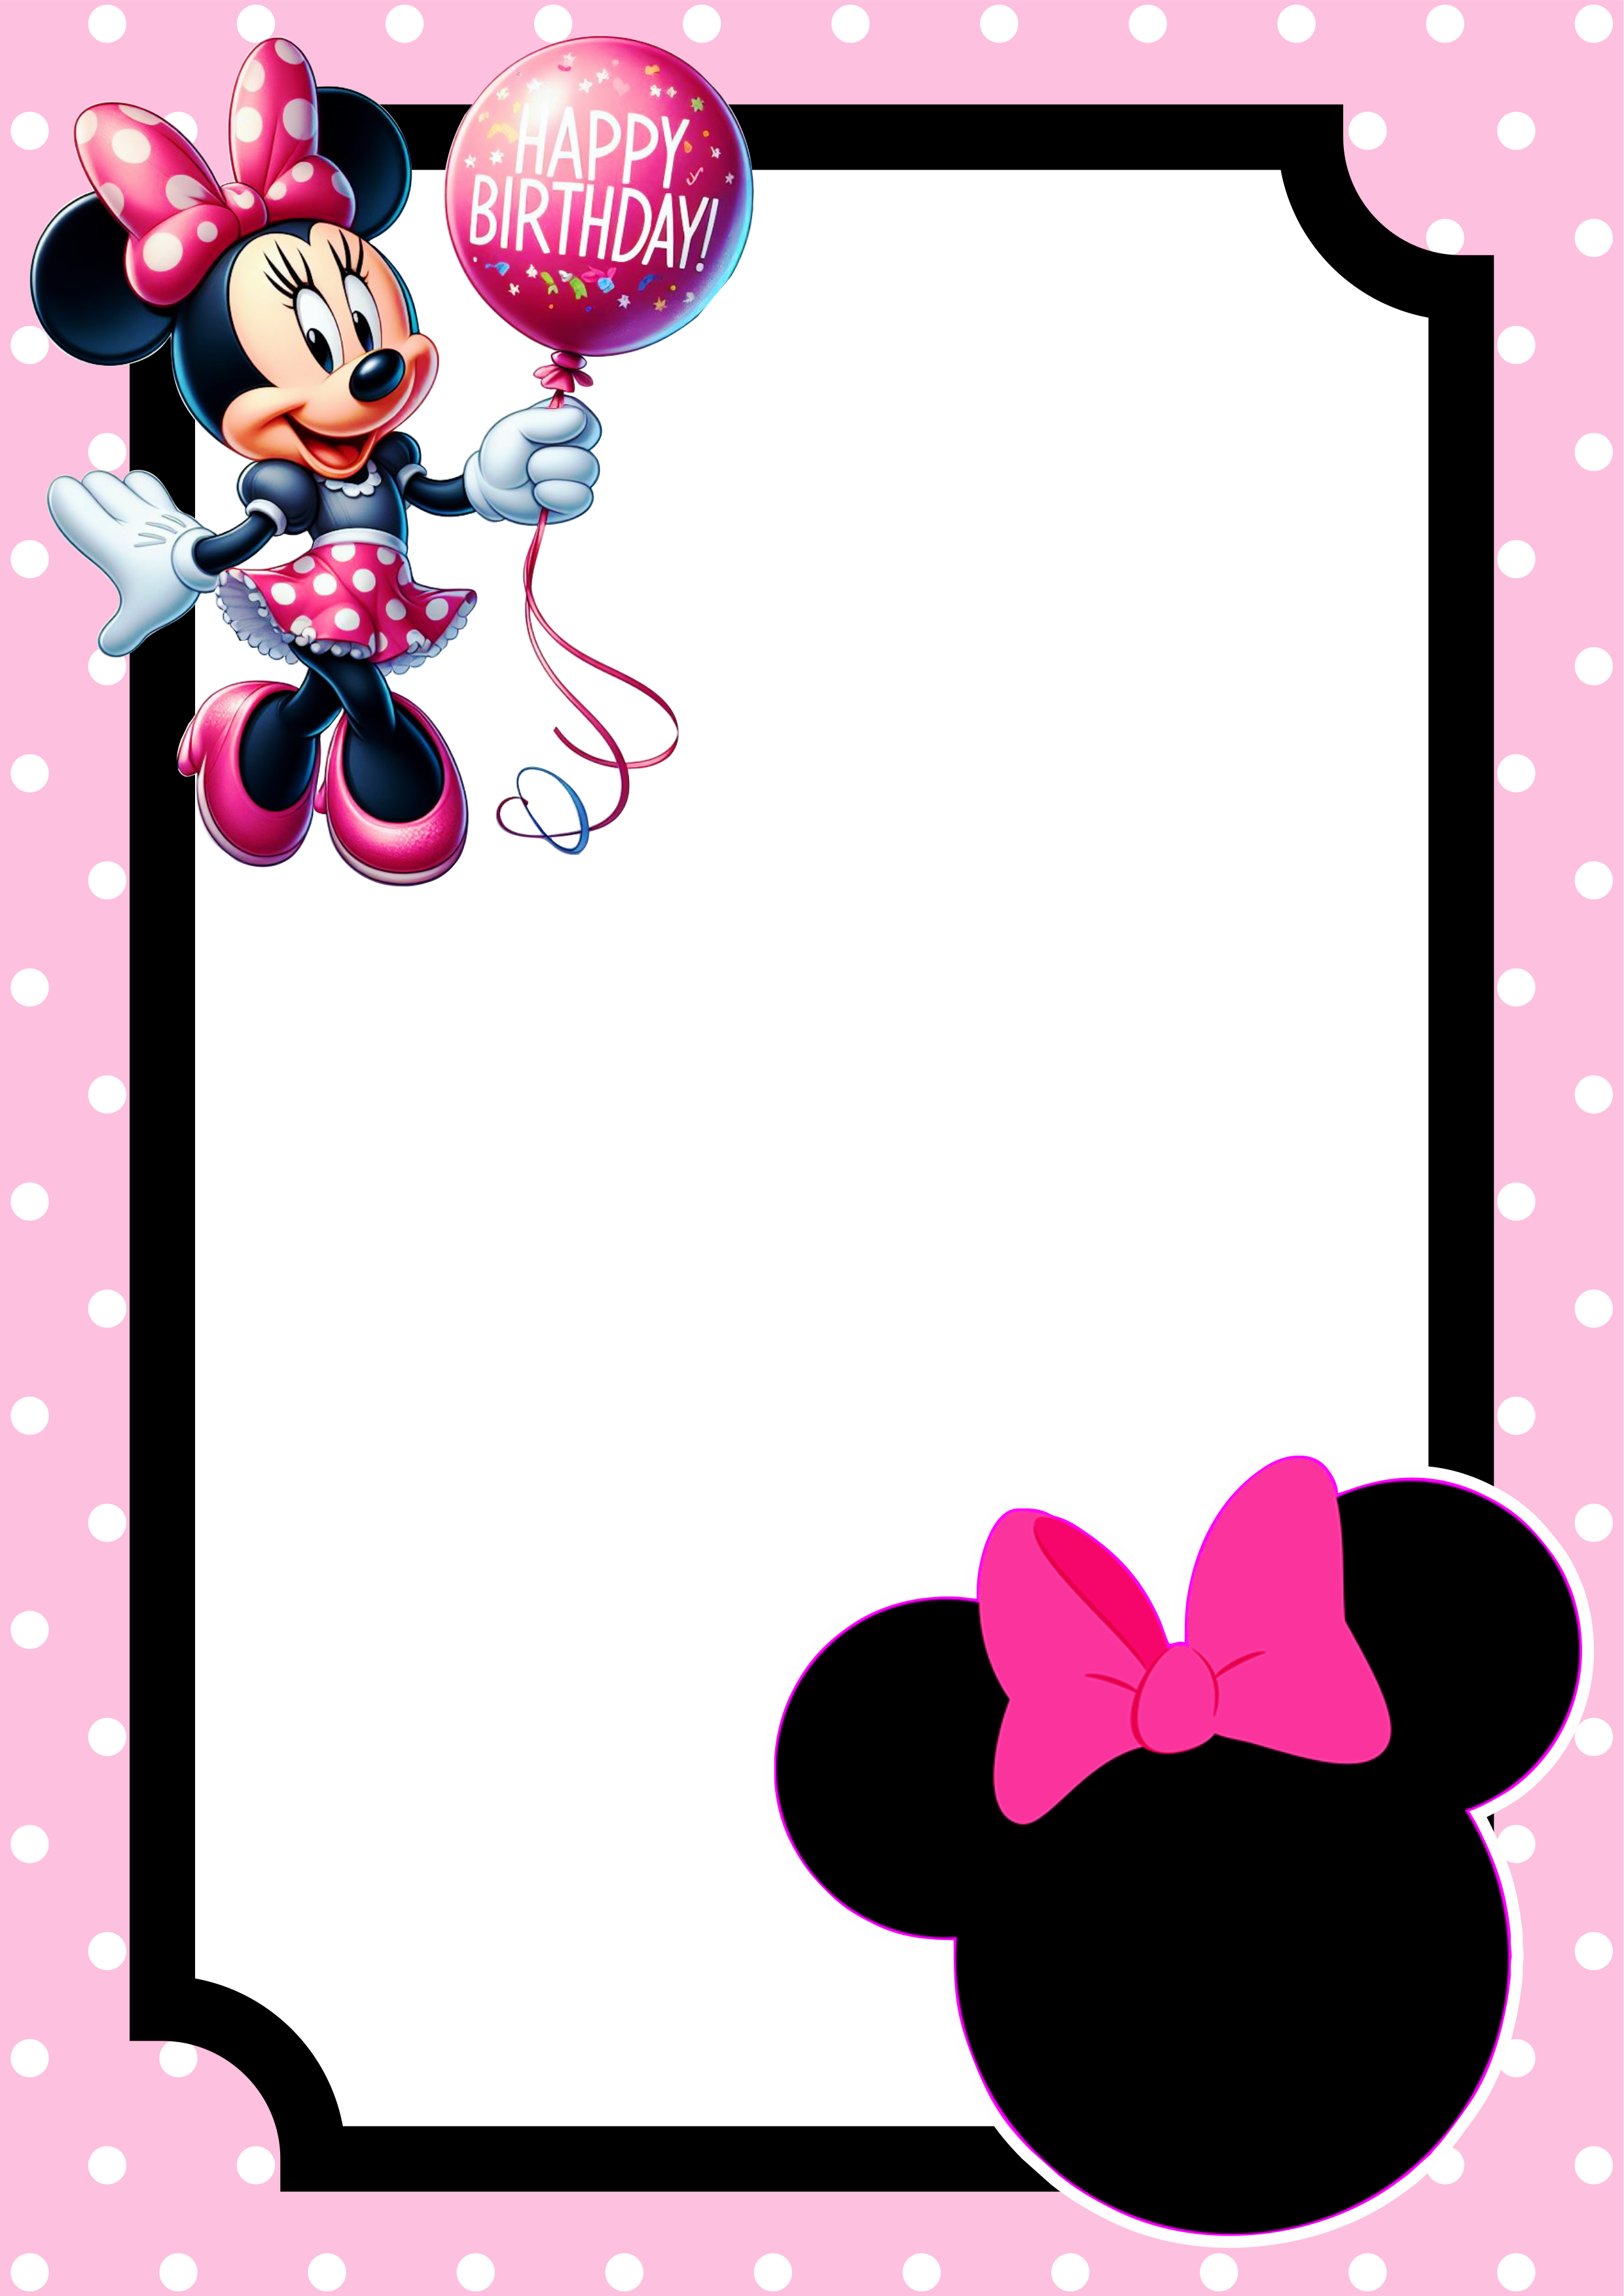 Convite virtual Minnie rosa molde pronto para editar e imprimir festa aniversário infantil Disney png